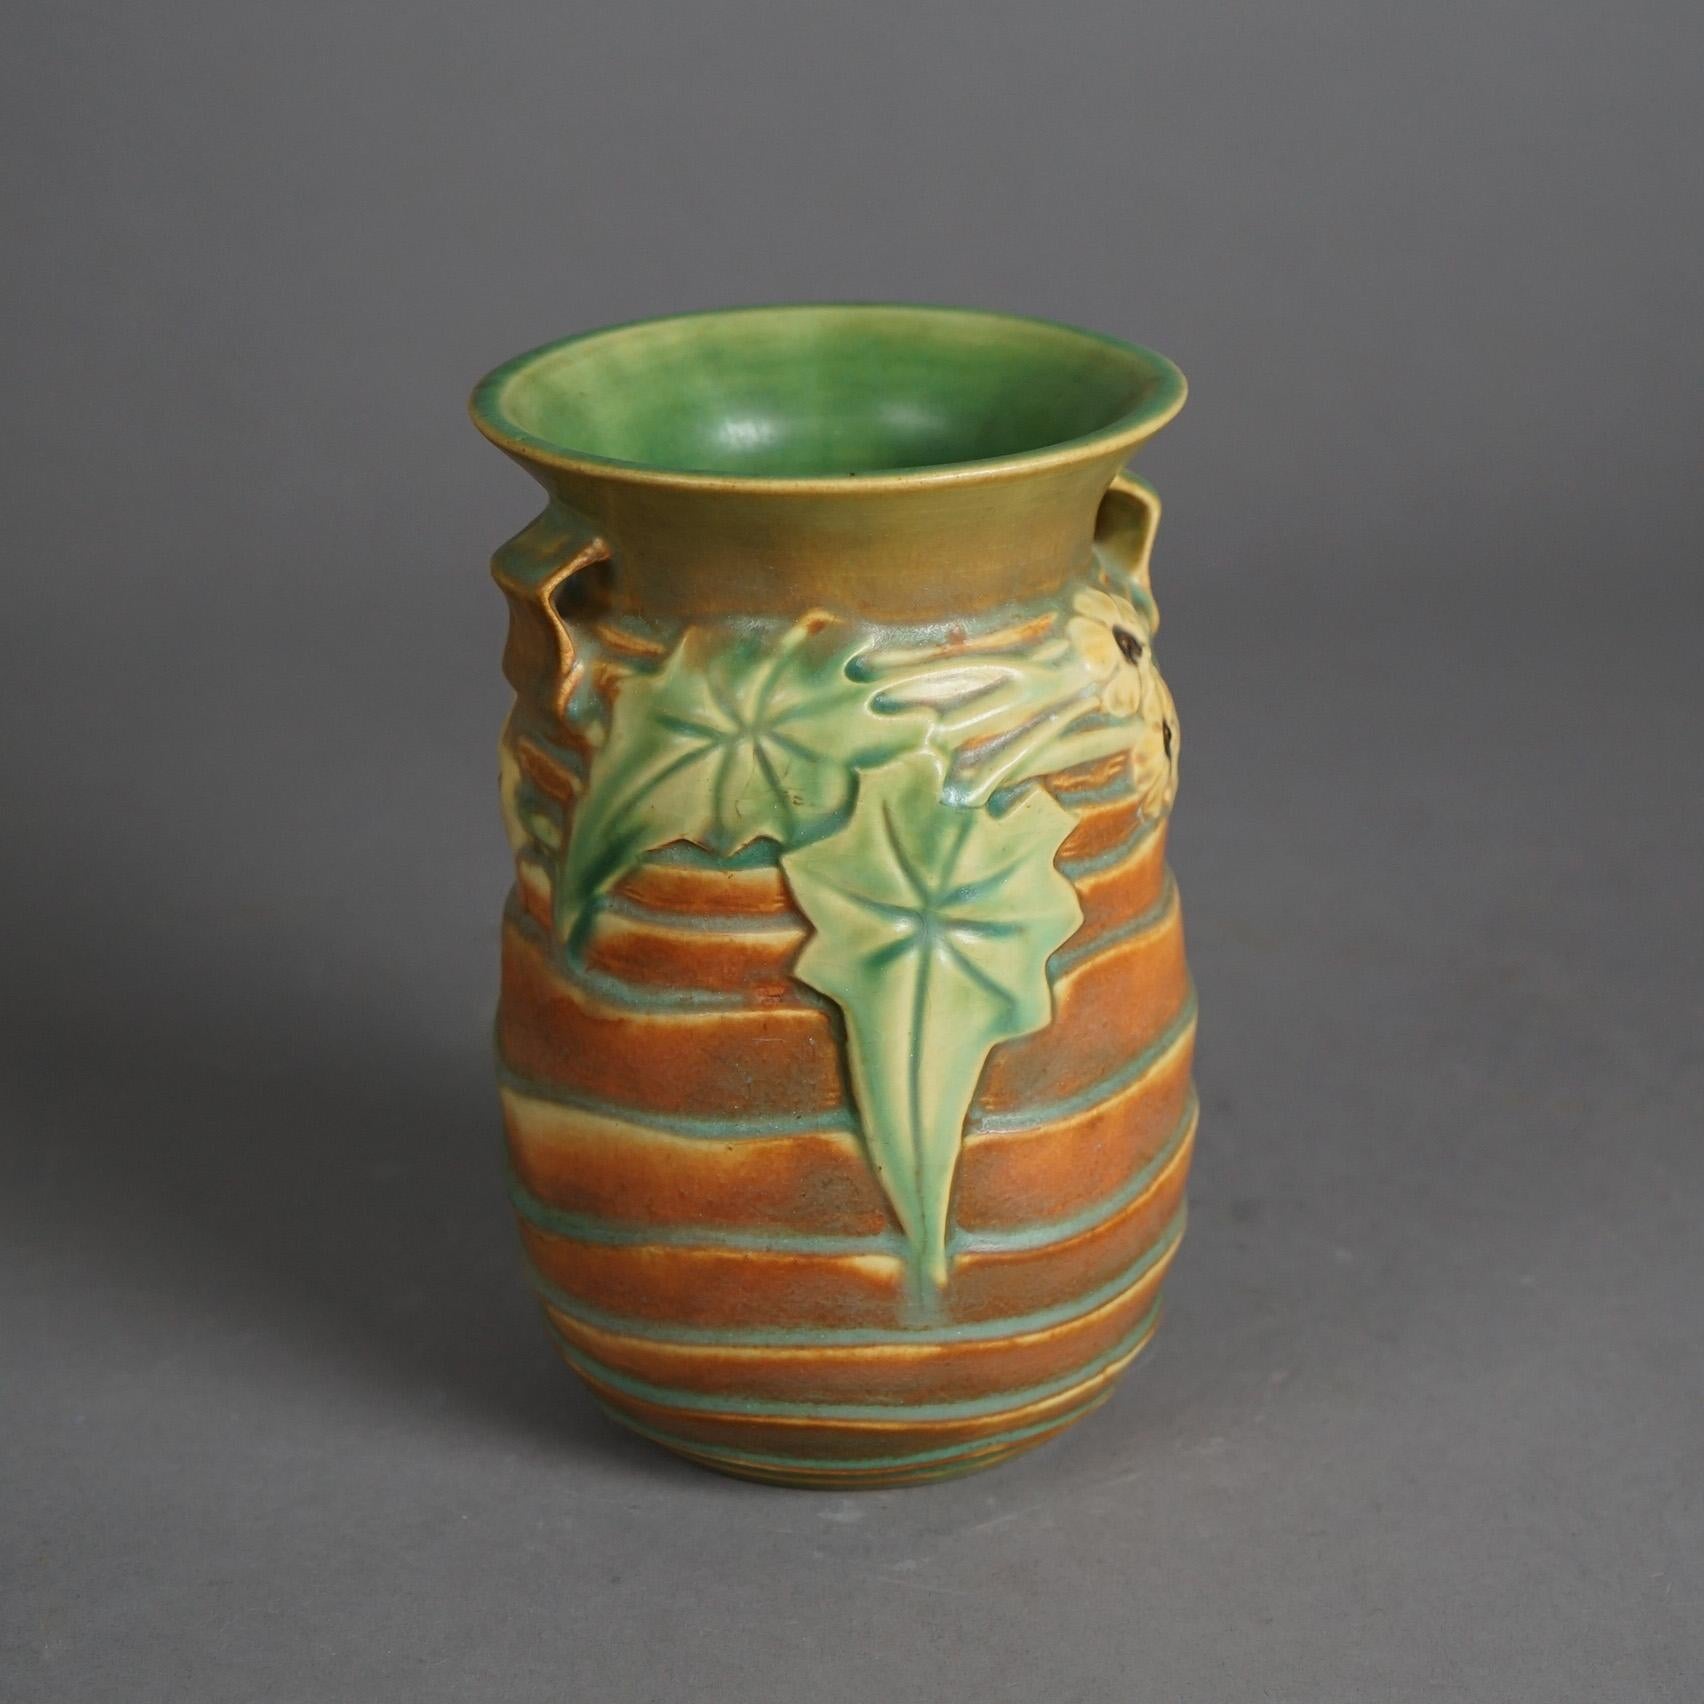 Eine Roseville-Vase aus der Zeit des Kunsthandwerks bietet eine kunstvolle Keramikkonstruktion mit dem Luffa-Muster, Herstelleretikett  auf der Basis wie fotografiert, um 1930

Maße: 7,5''H x 4,75''B x 4,75''D